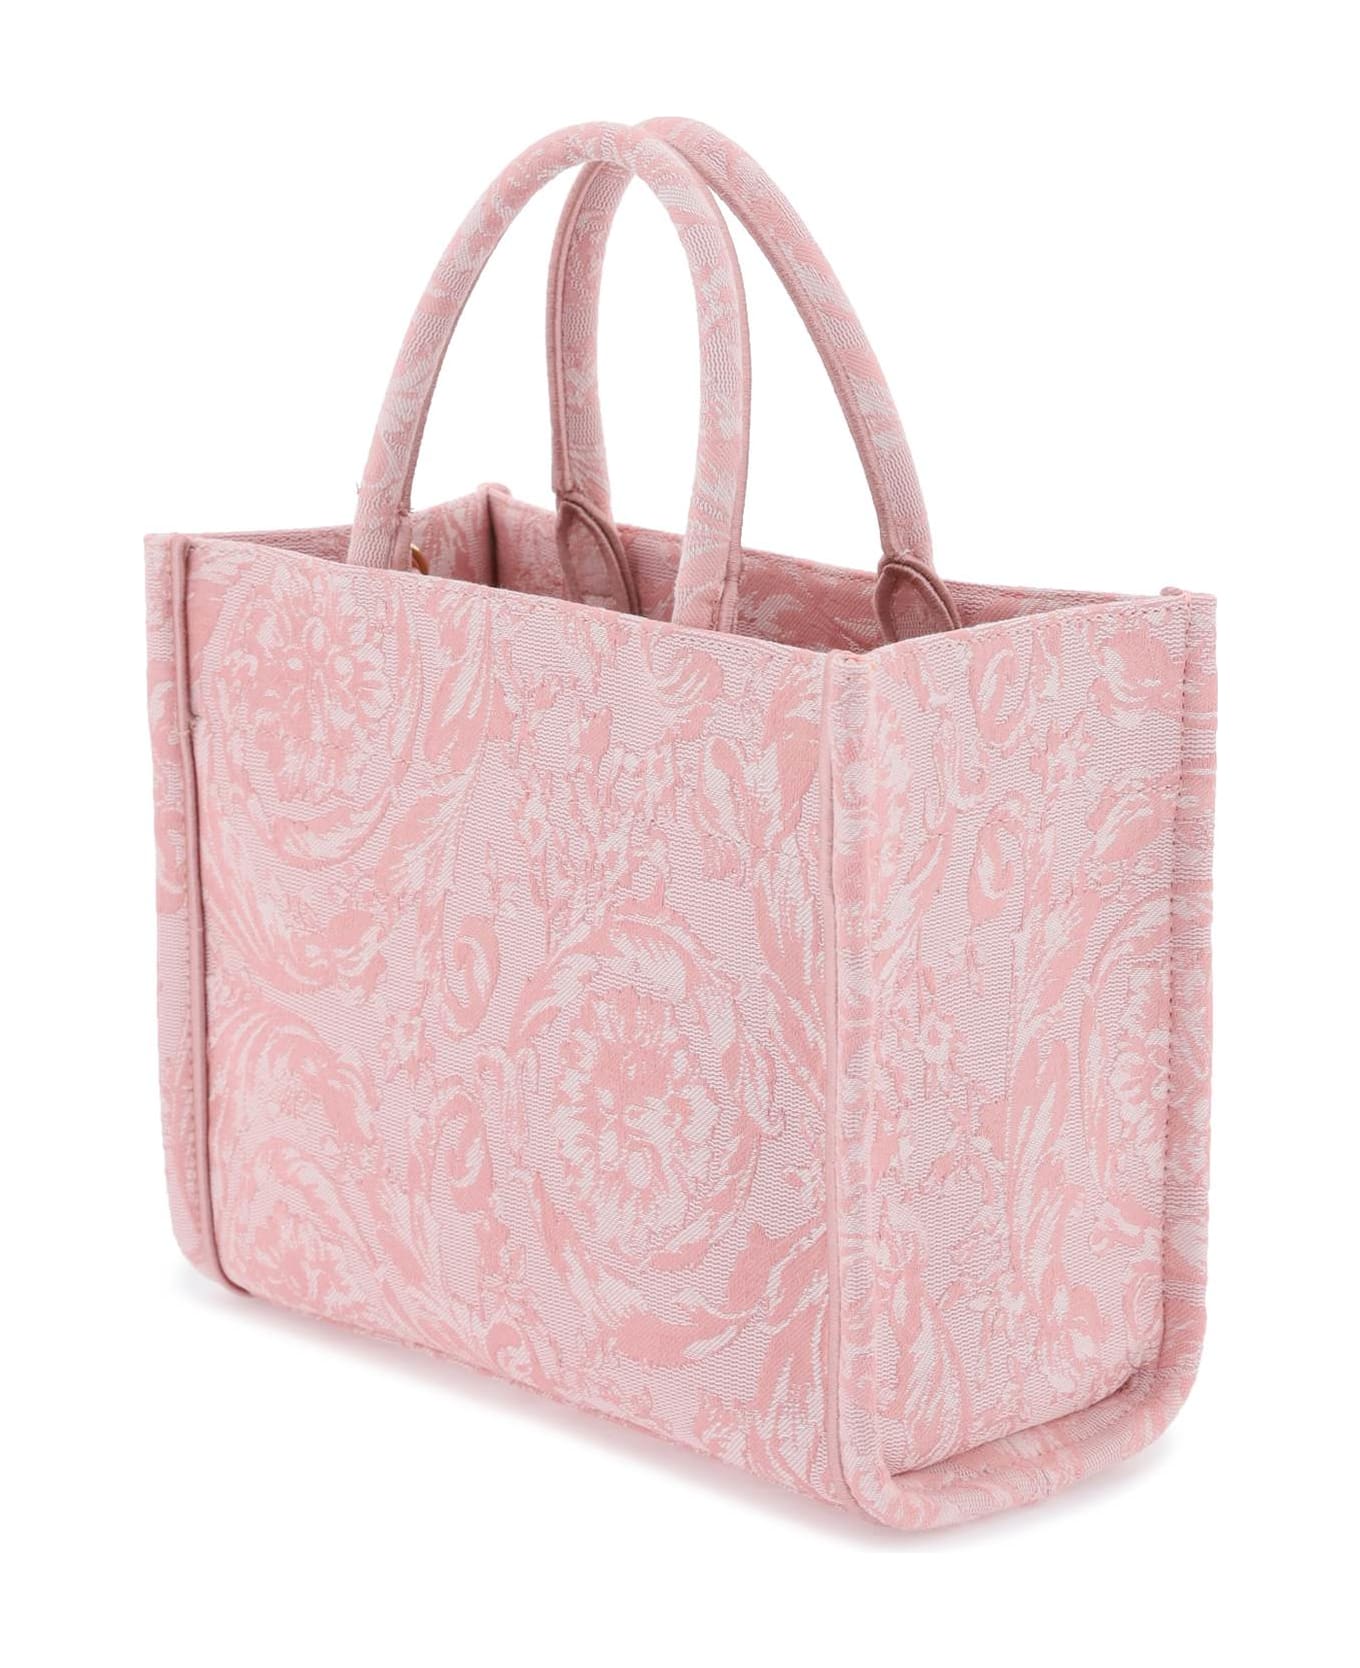 Versace Pink Woven Bag - Pink トートバッグ